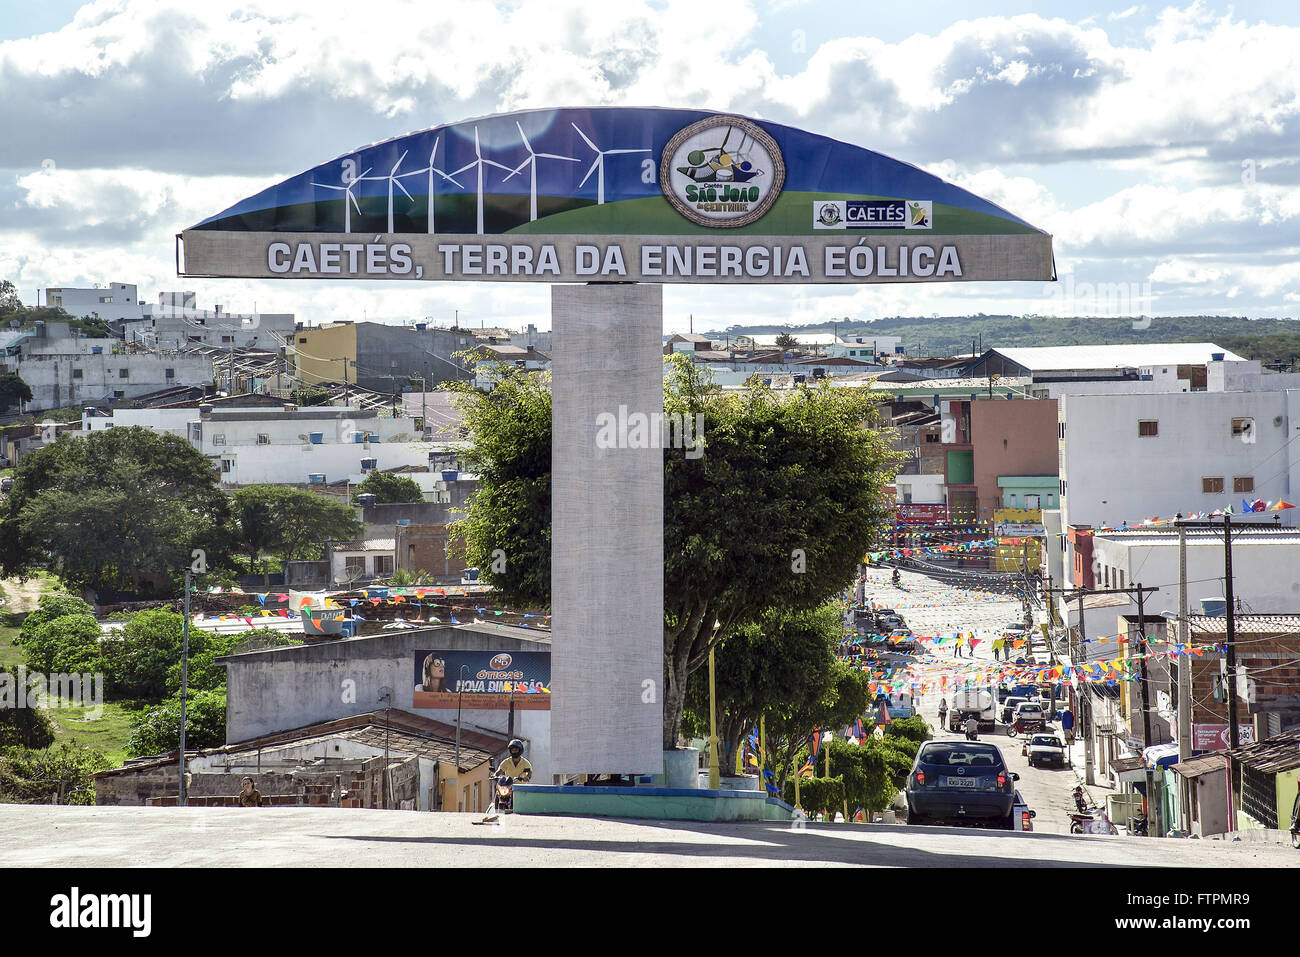 Na Totem entrada da Cidade informando que e un terra da energia eolica - agreste pernambucano Banque D'Images